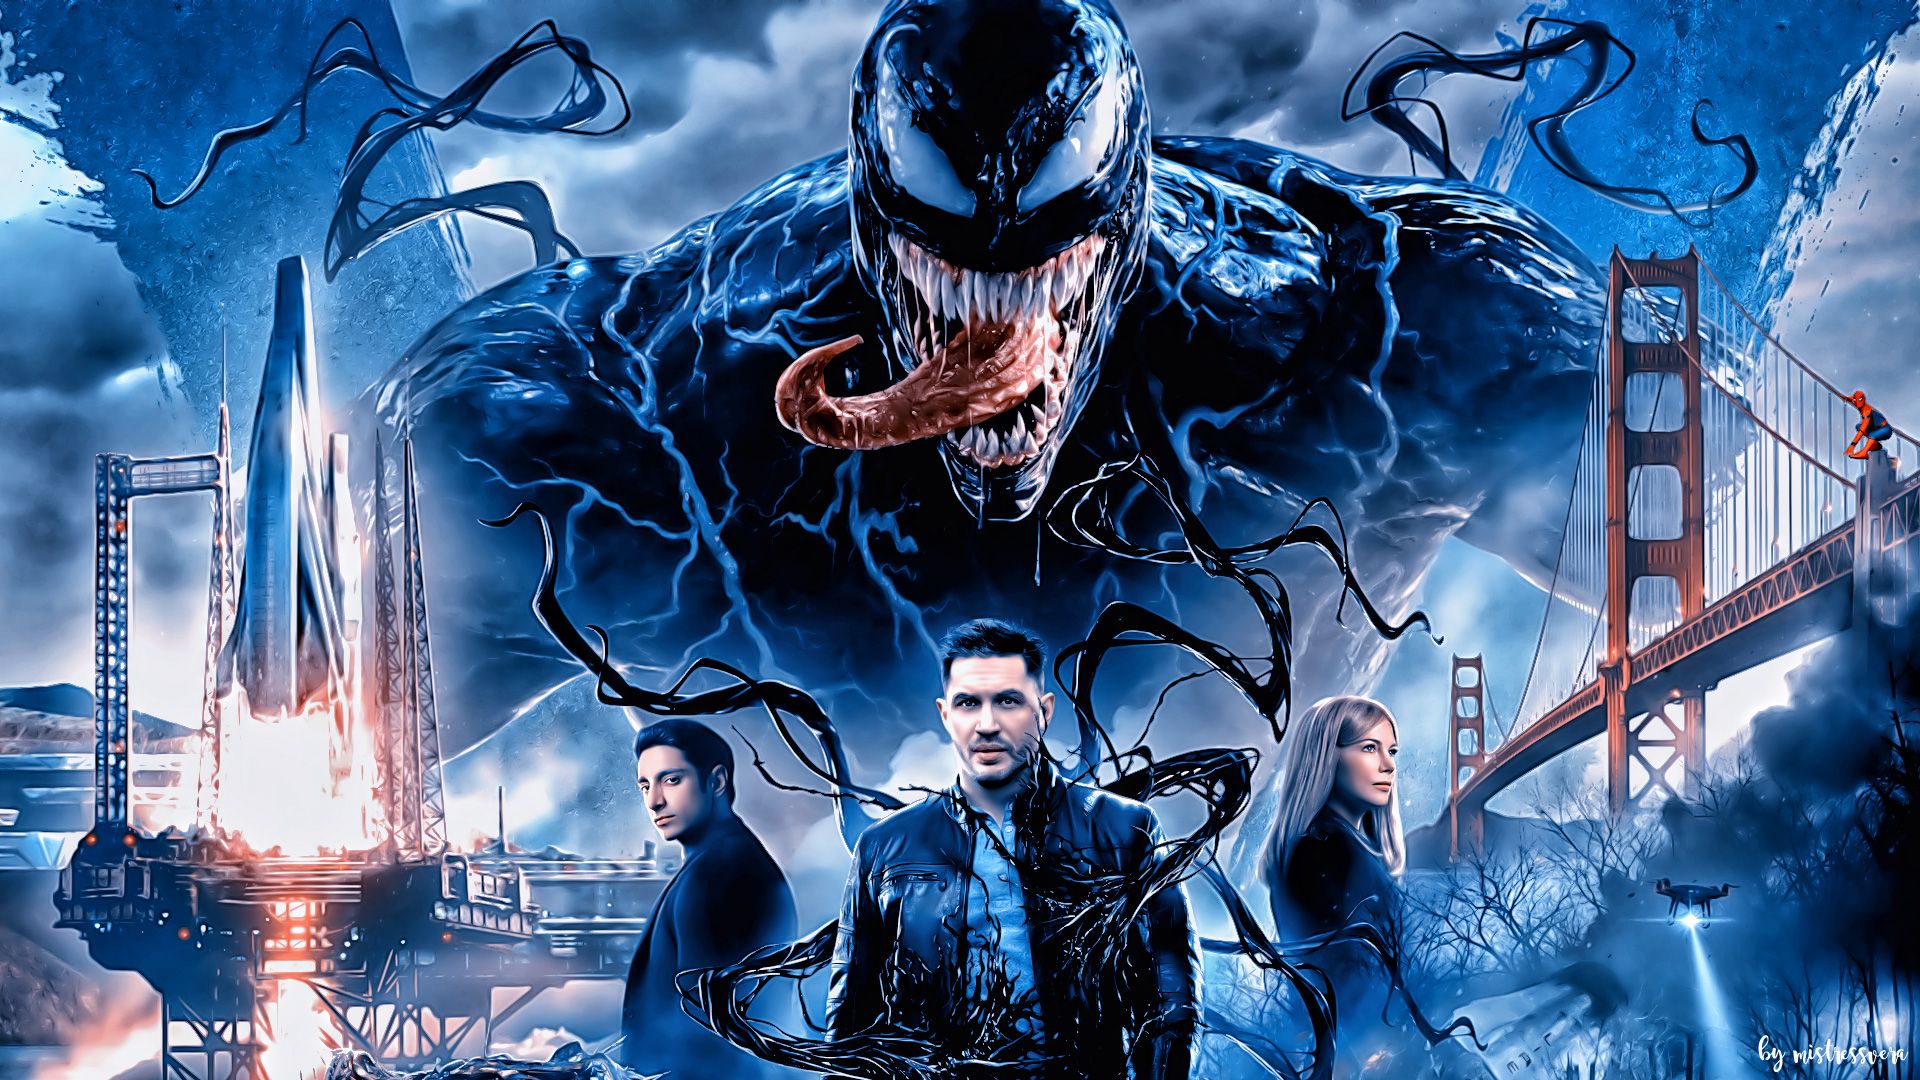 Venom Movie Background HD. TV SHOWS AIRING